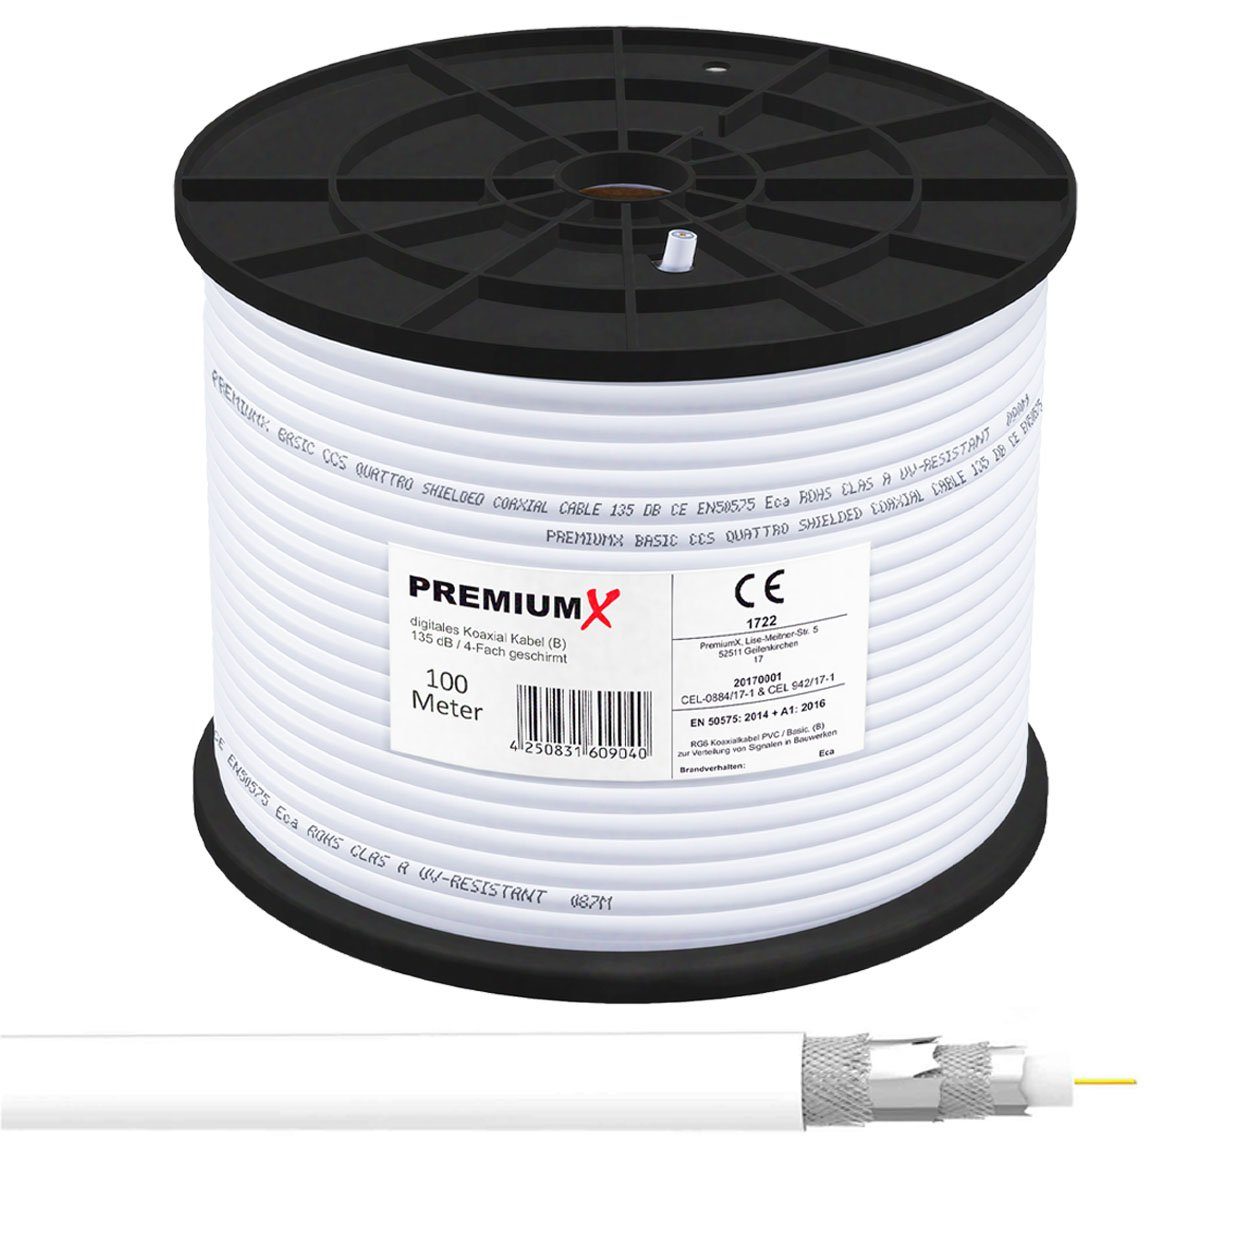 PremiumX 100m BASIC Koaxialkabel 135dB 4-fach CCS SAT Kabel Antennenkabel  TV-Kabel